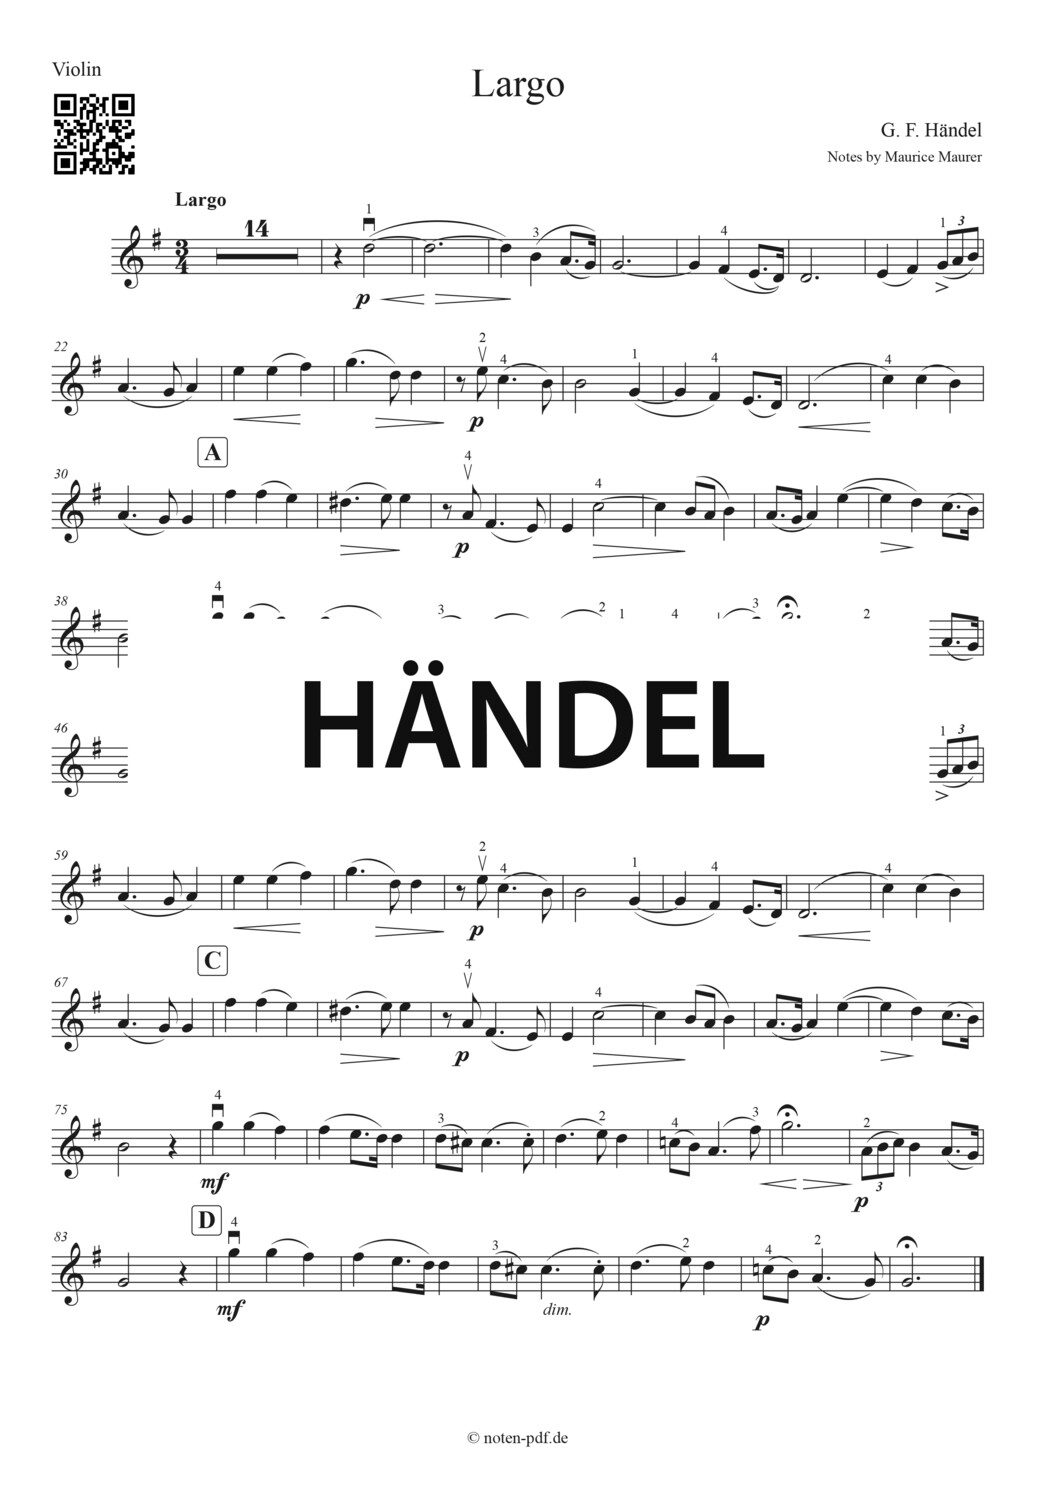 Händel: Largo (Violin Sheet Music)